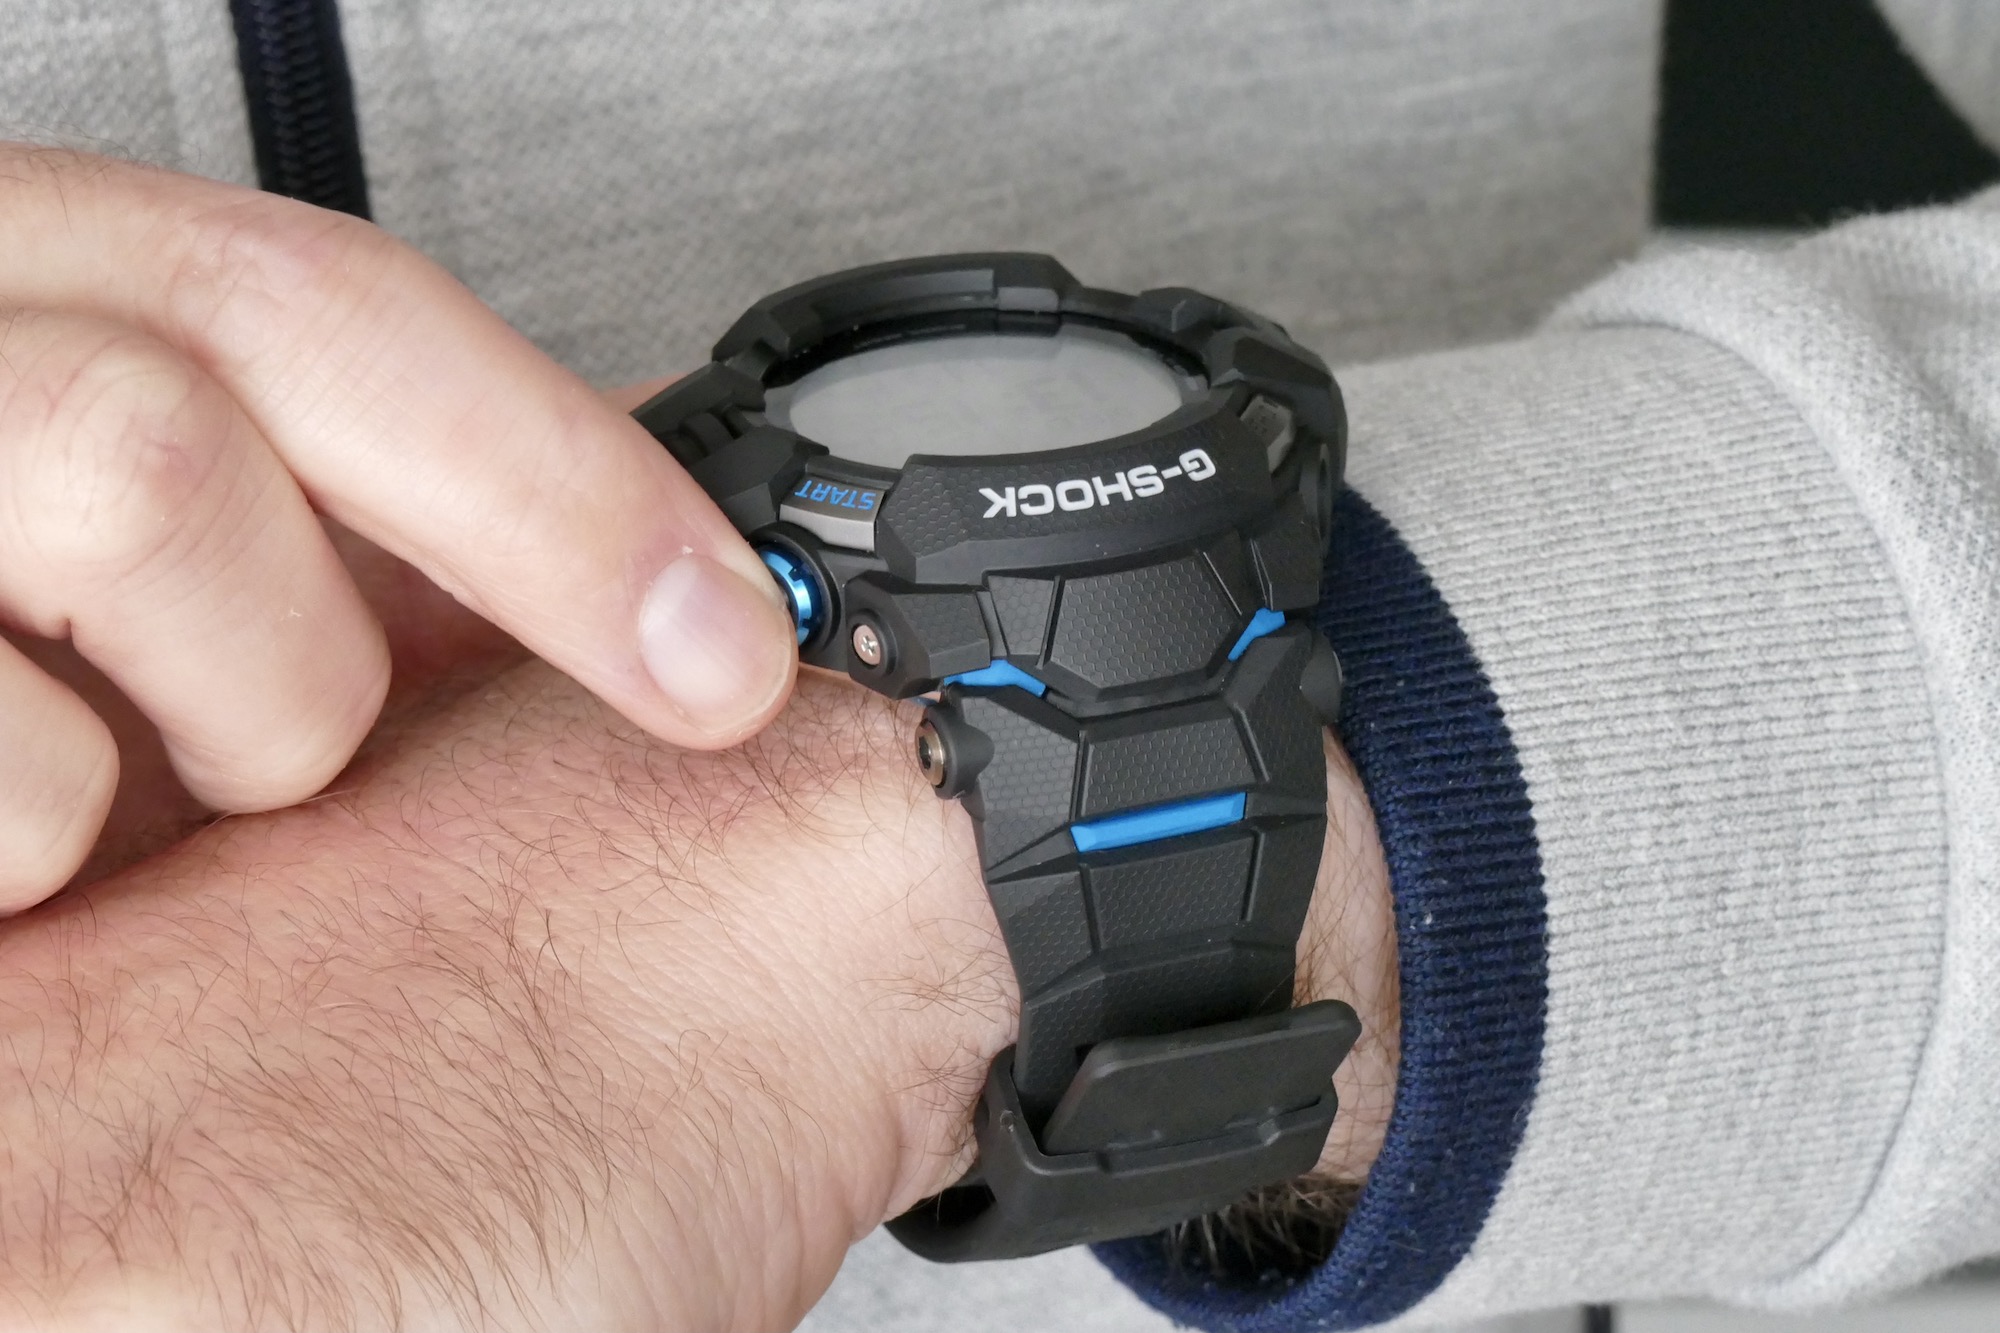 casio g shock gsw h1000 smartwatch review wrist start button